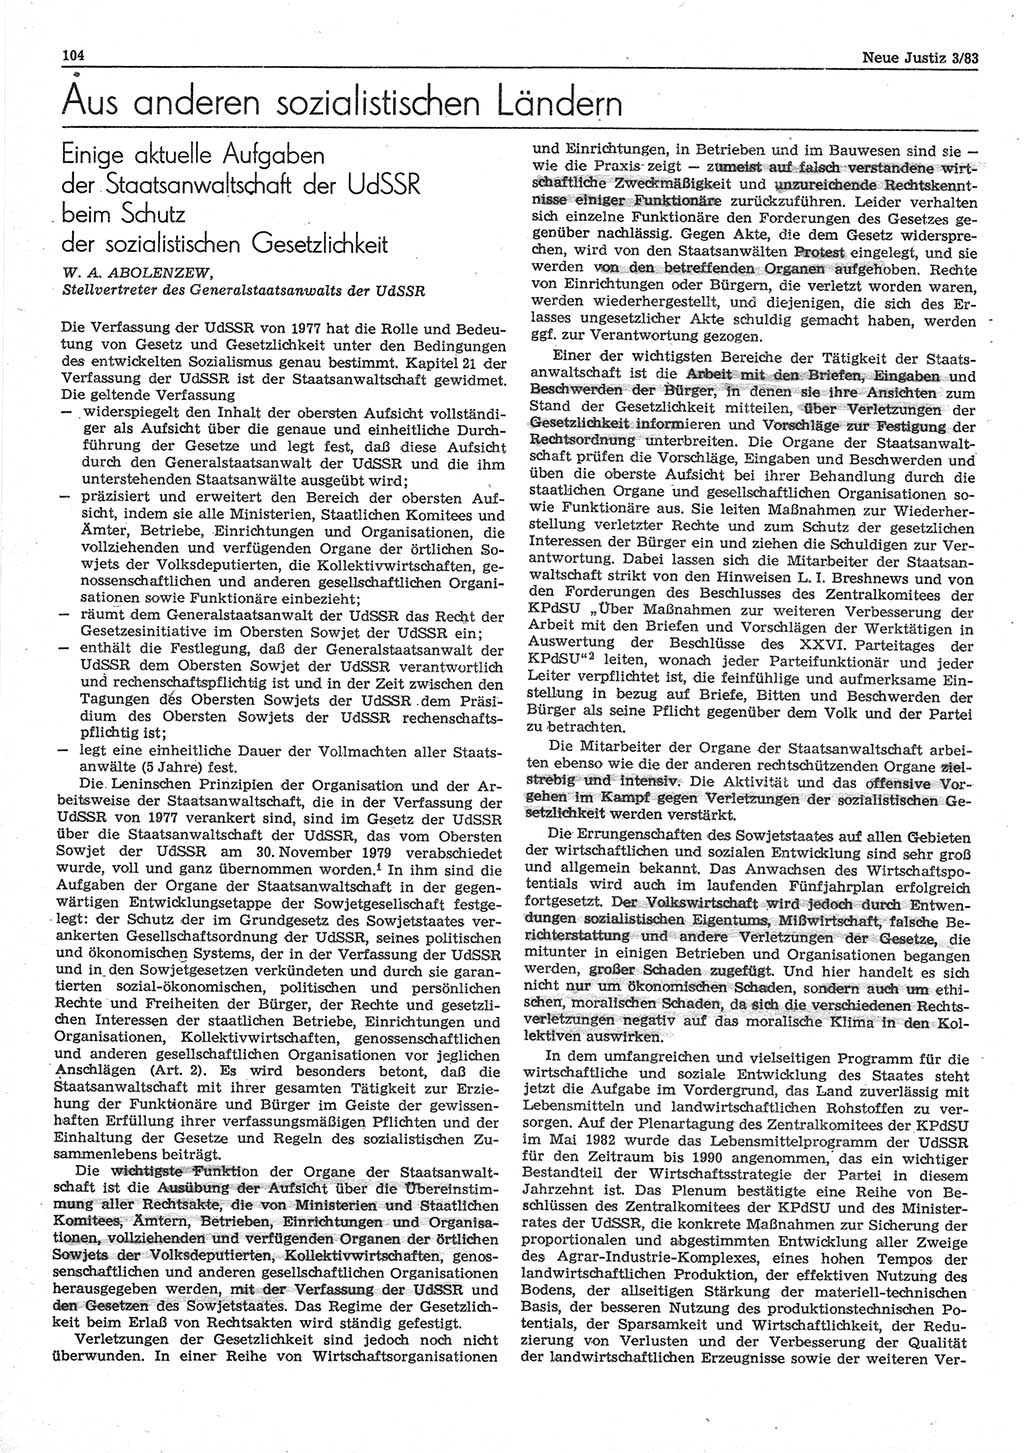 Neue Justiz (NJ), Zeitschrift für sozialistisches Recht und Gesetzlichkeit [Deutsche Demokratische Republik (DDR)], 37. Jahrgang 1983, Seite 104 (NJ DDR 1983, S. 104)